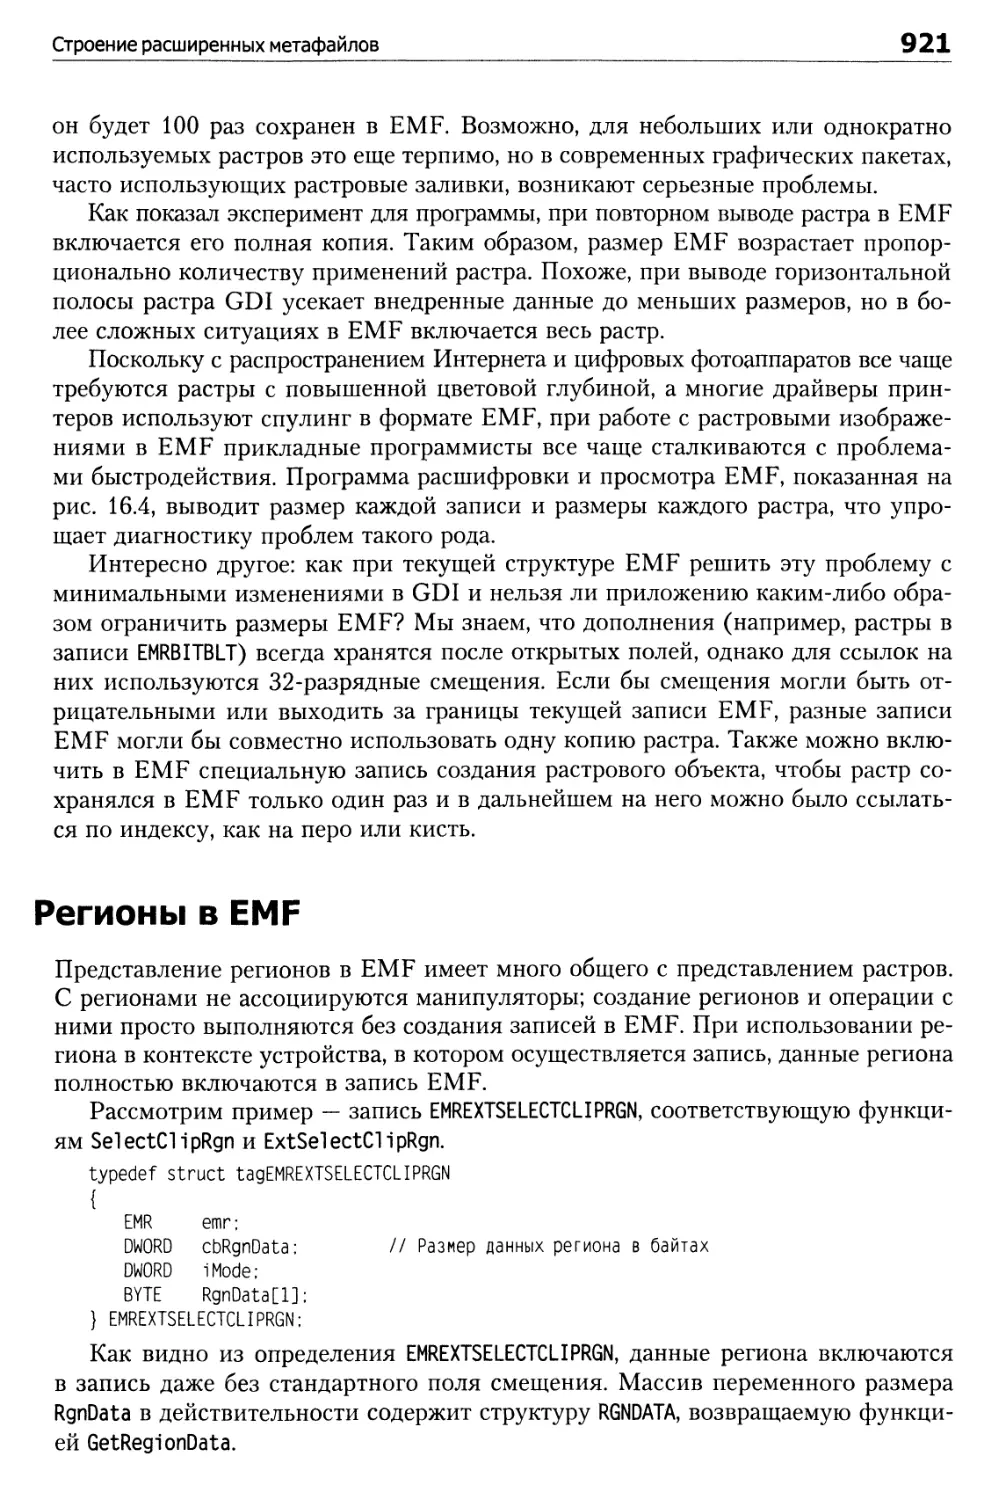 Регионы в EMF